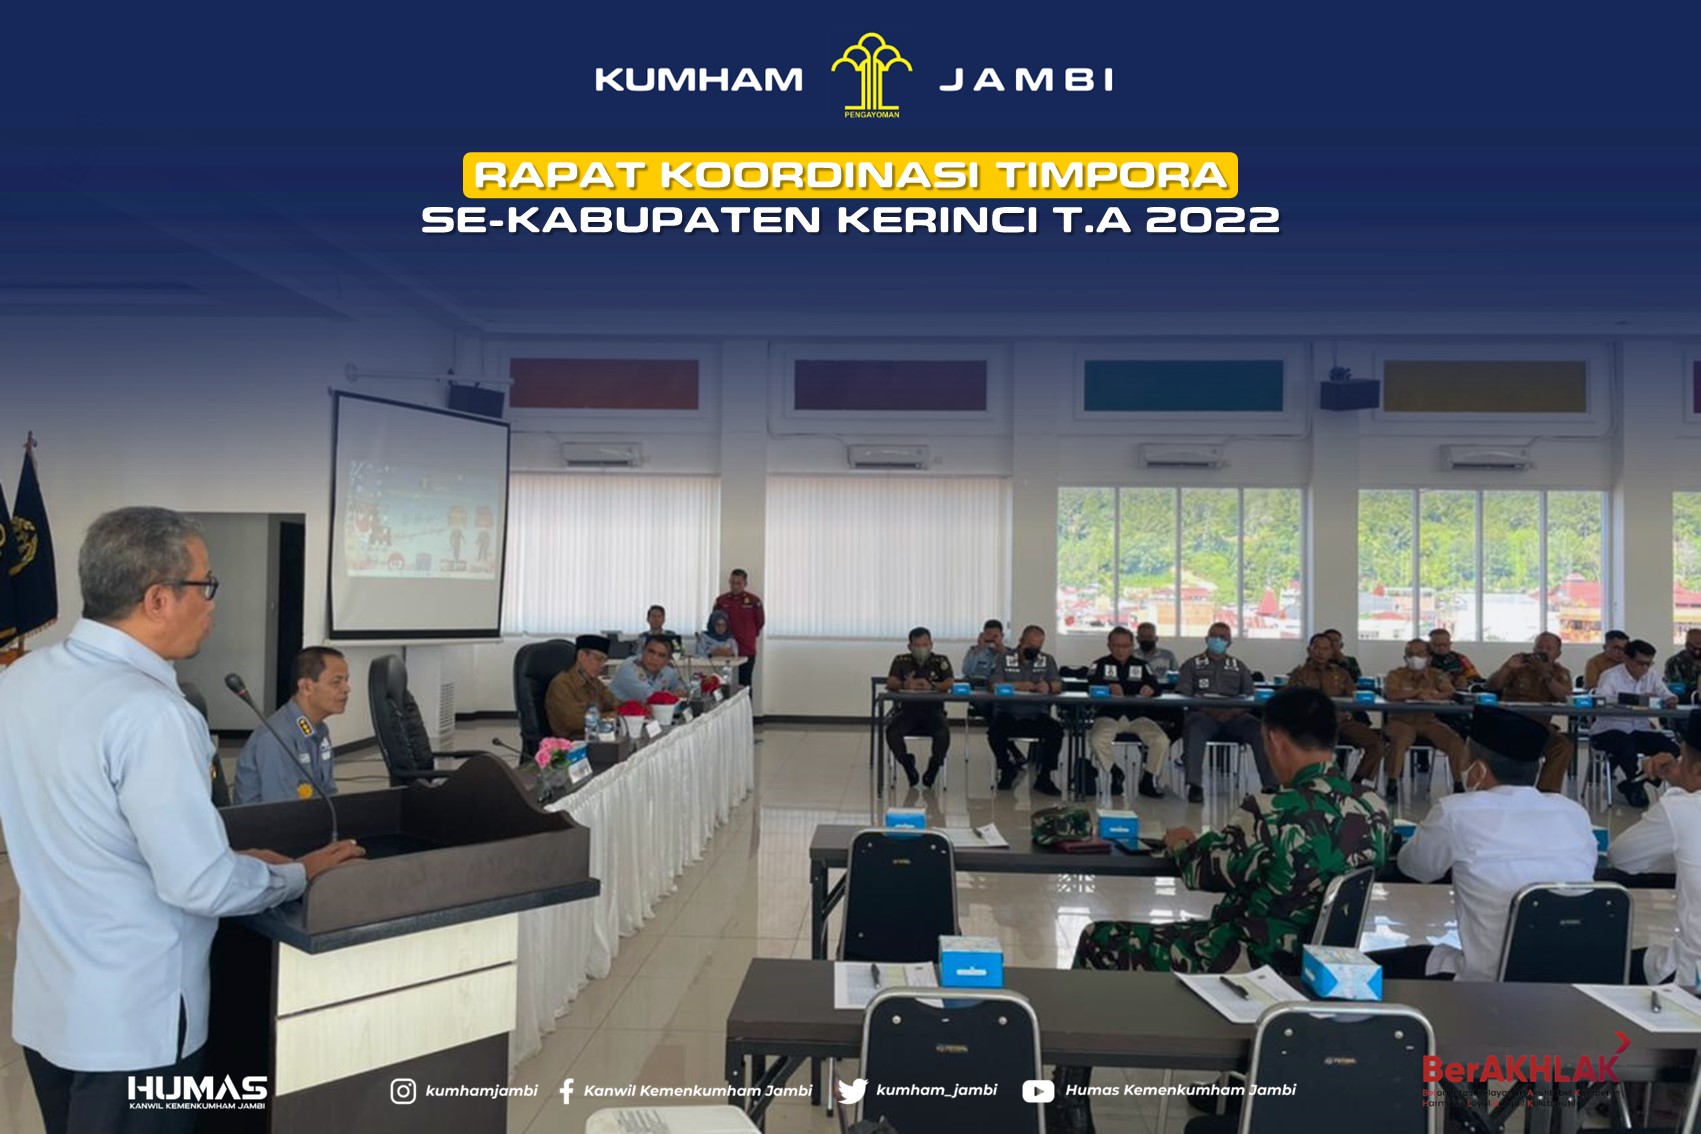 131._27-6-2022_-_Rapat_Koordinasi_Timpora_Se-Kabupaten_Kerinci_T.A_2022.jpg